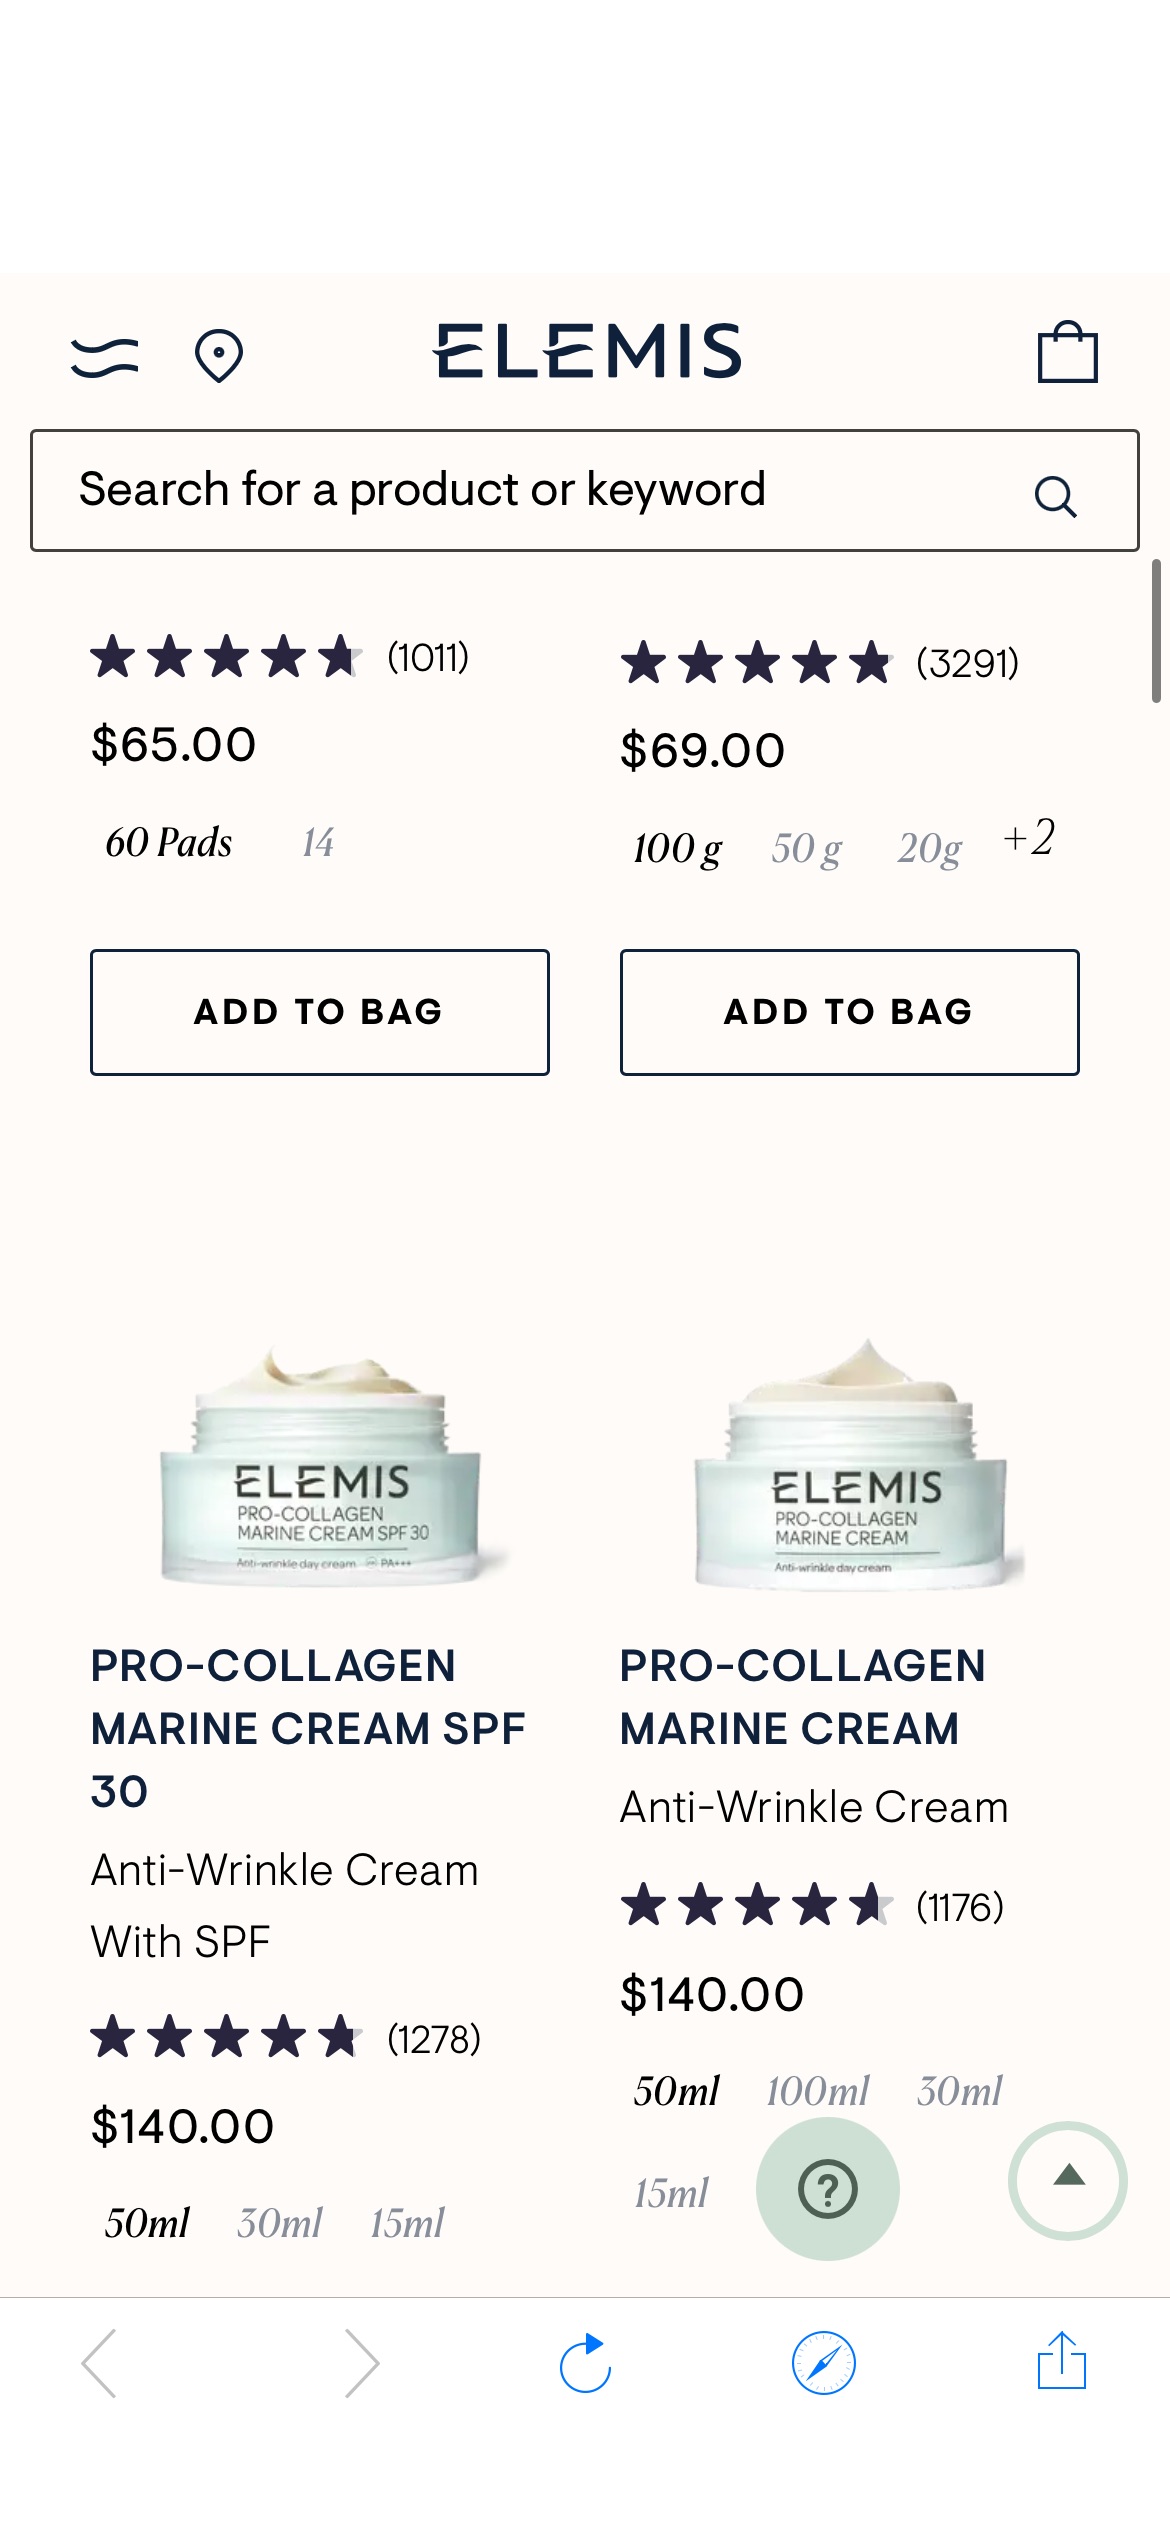 A Free Pro-Collagen Pair Gift With Purchase ELEMIS：当你花费100美元以上时，2个免费的Pro-Collagen眼部产品（价值130美元）！

我们给您的礼物包括1个全尺寸的Pro-Collagen眼部复活面膜和1个迷你Pro-Collagen Vitality眼霜。

您的有限时间使用代码REVIVE